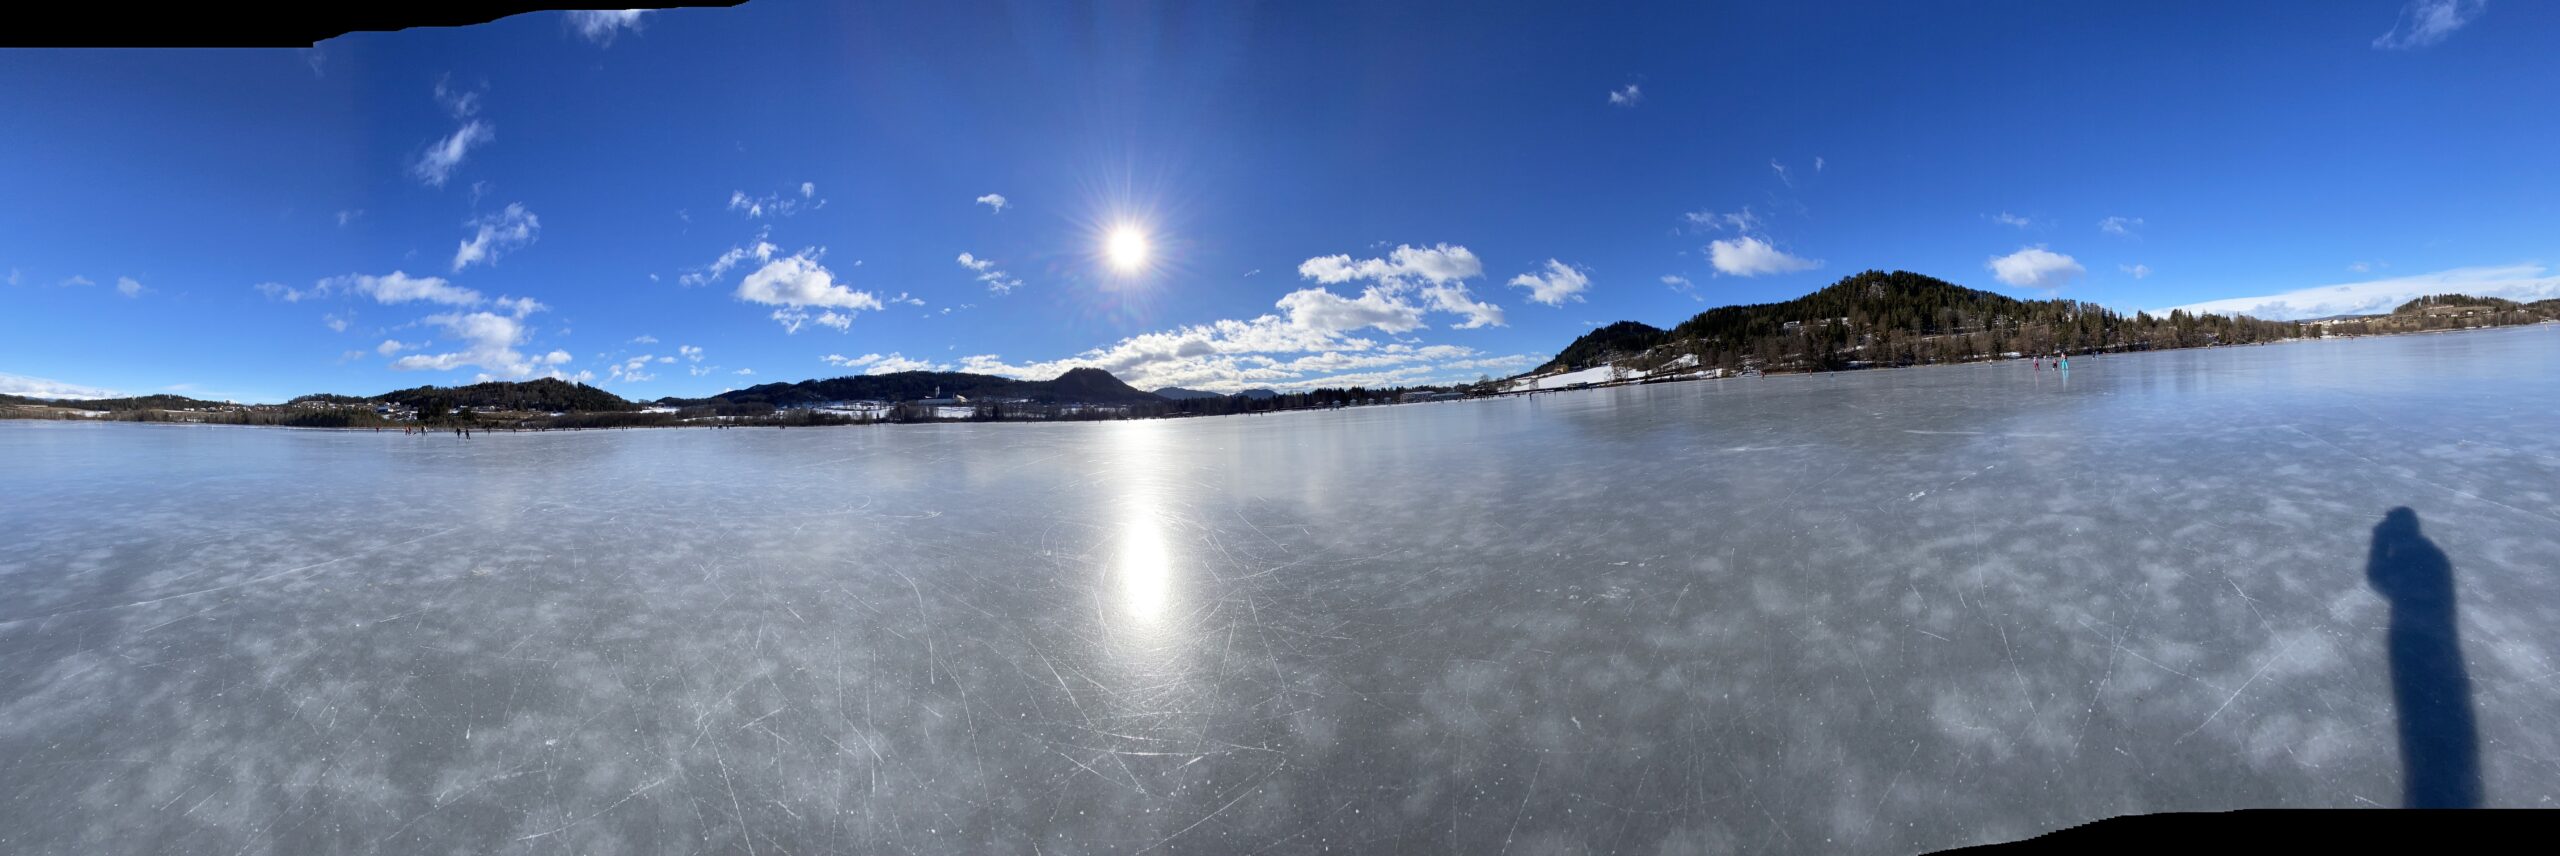 Ein See mit Eisfläche